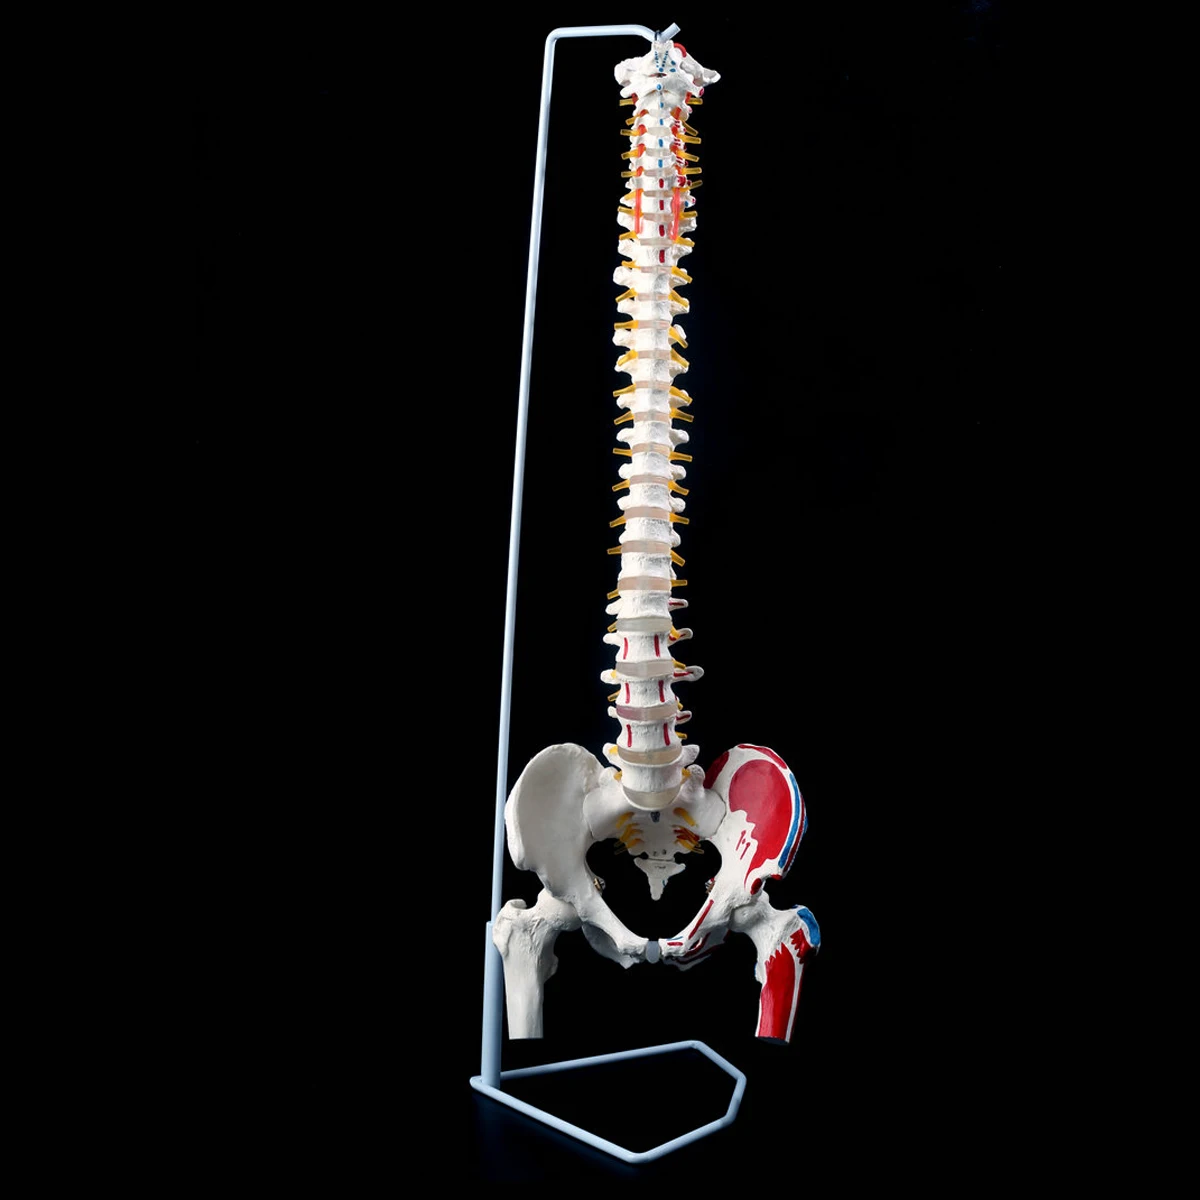 85 см 1:1 в натуральную величину Анатомия человека модель позвоночника тазовые бедра+ подставка школьная образовательная медицинская научная анатомическая обучающая модель